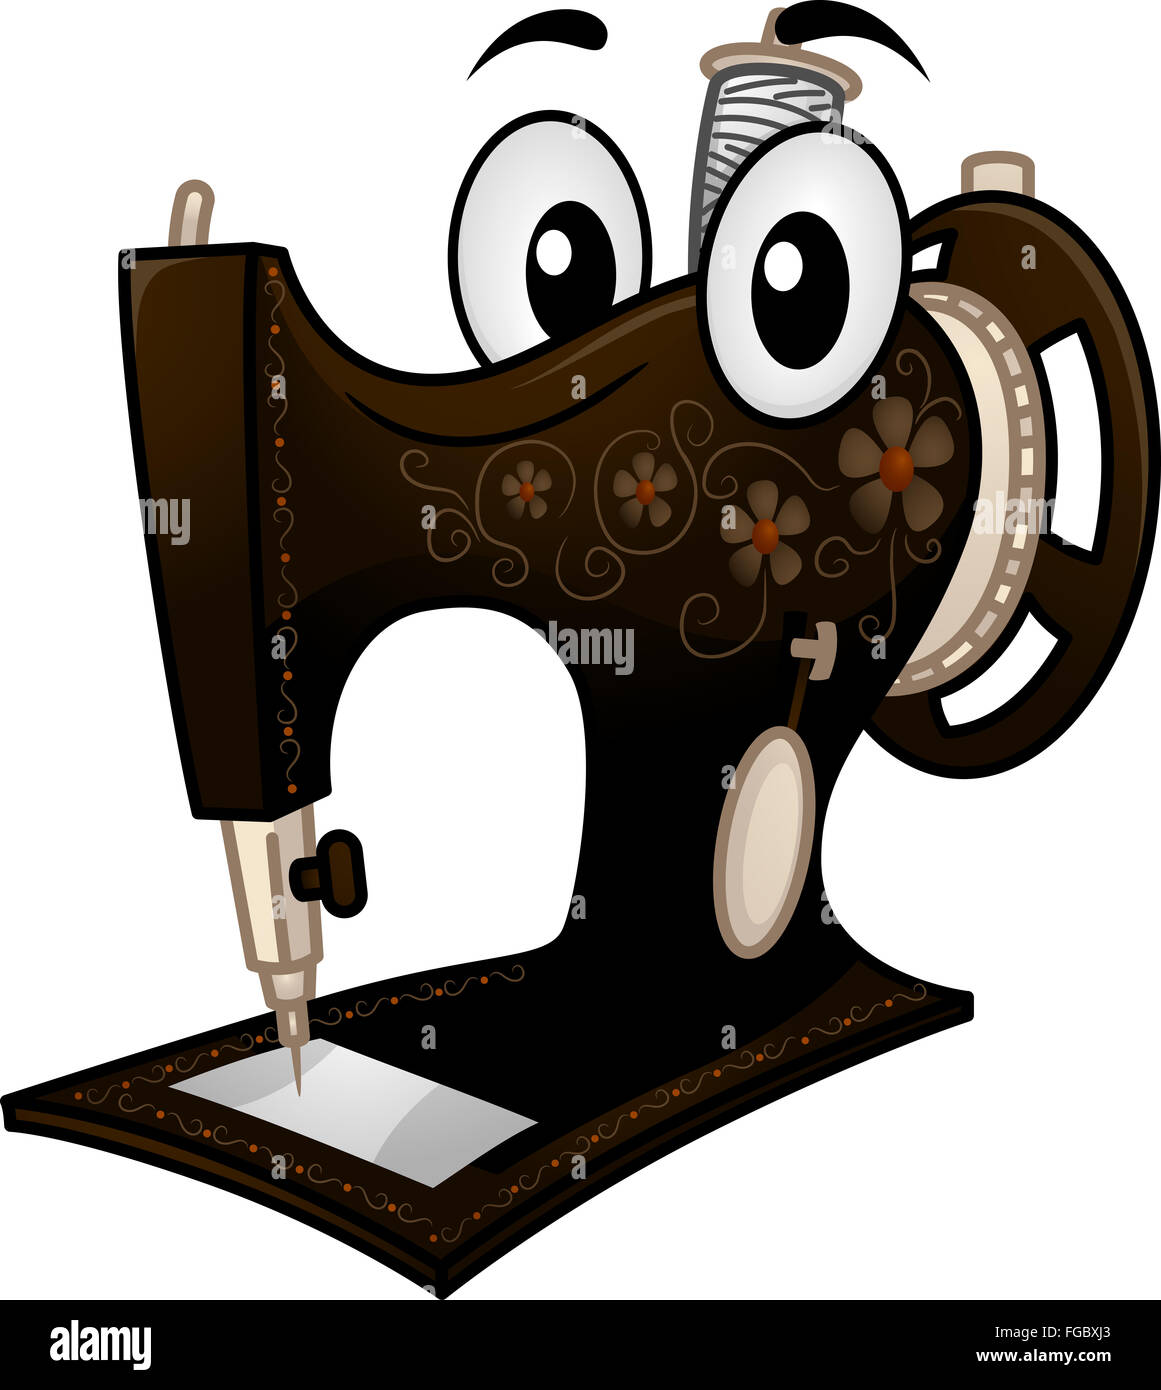 Mascot Illustration d'une machine à coudre Vintage Banque D'Images